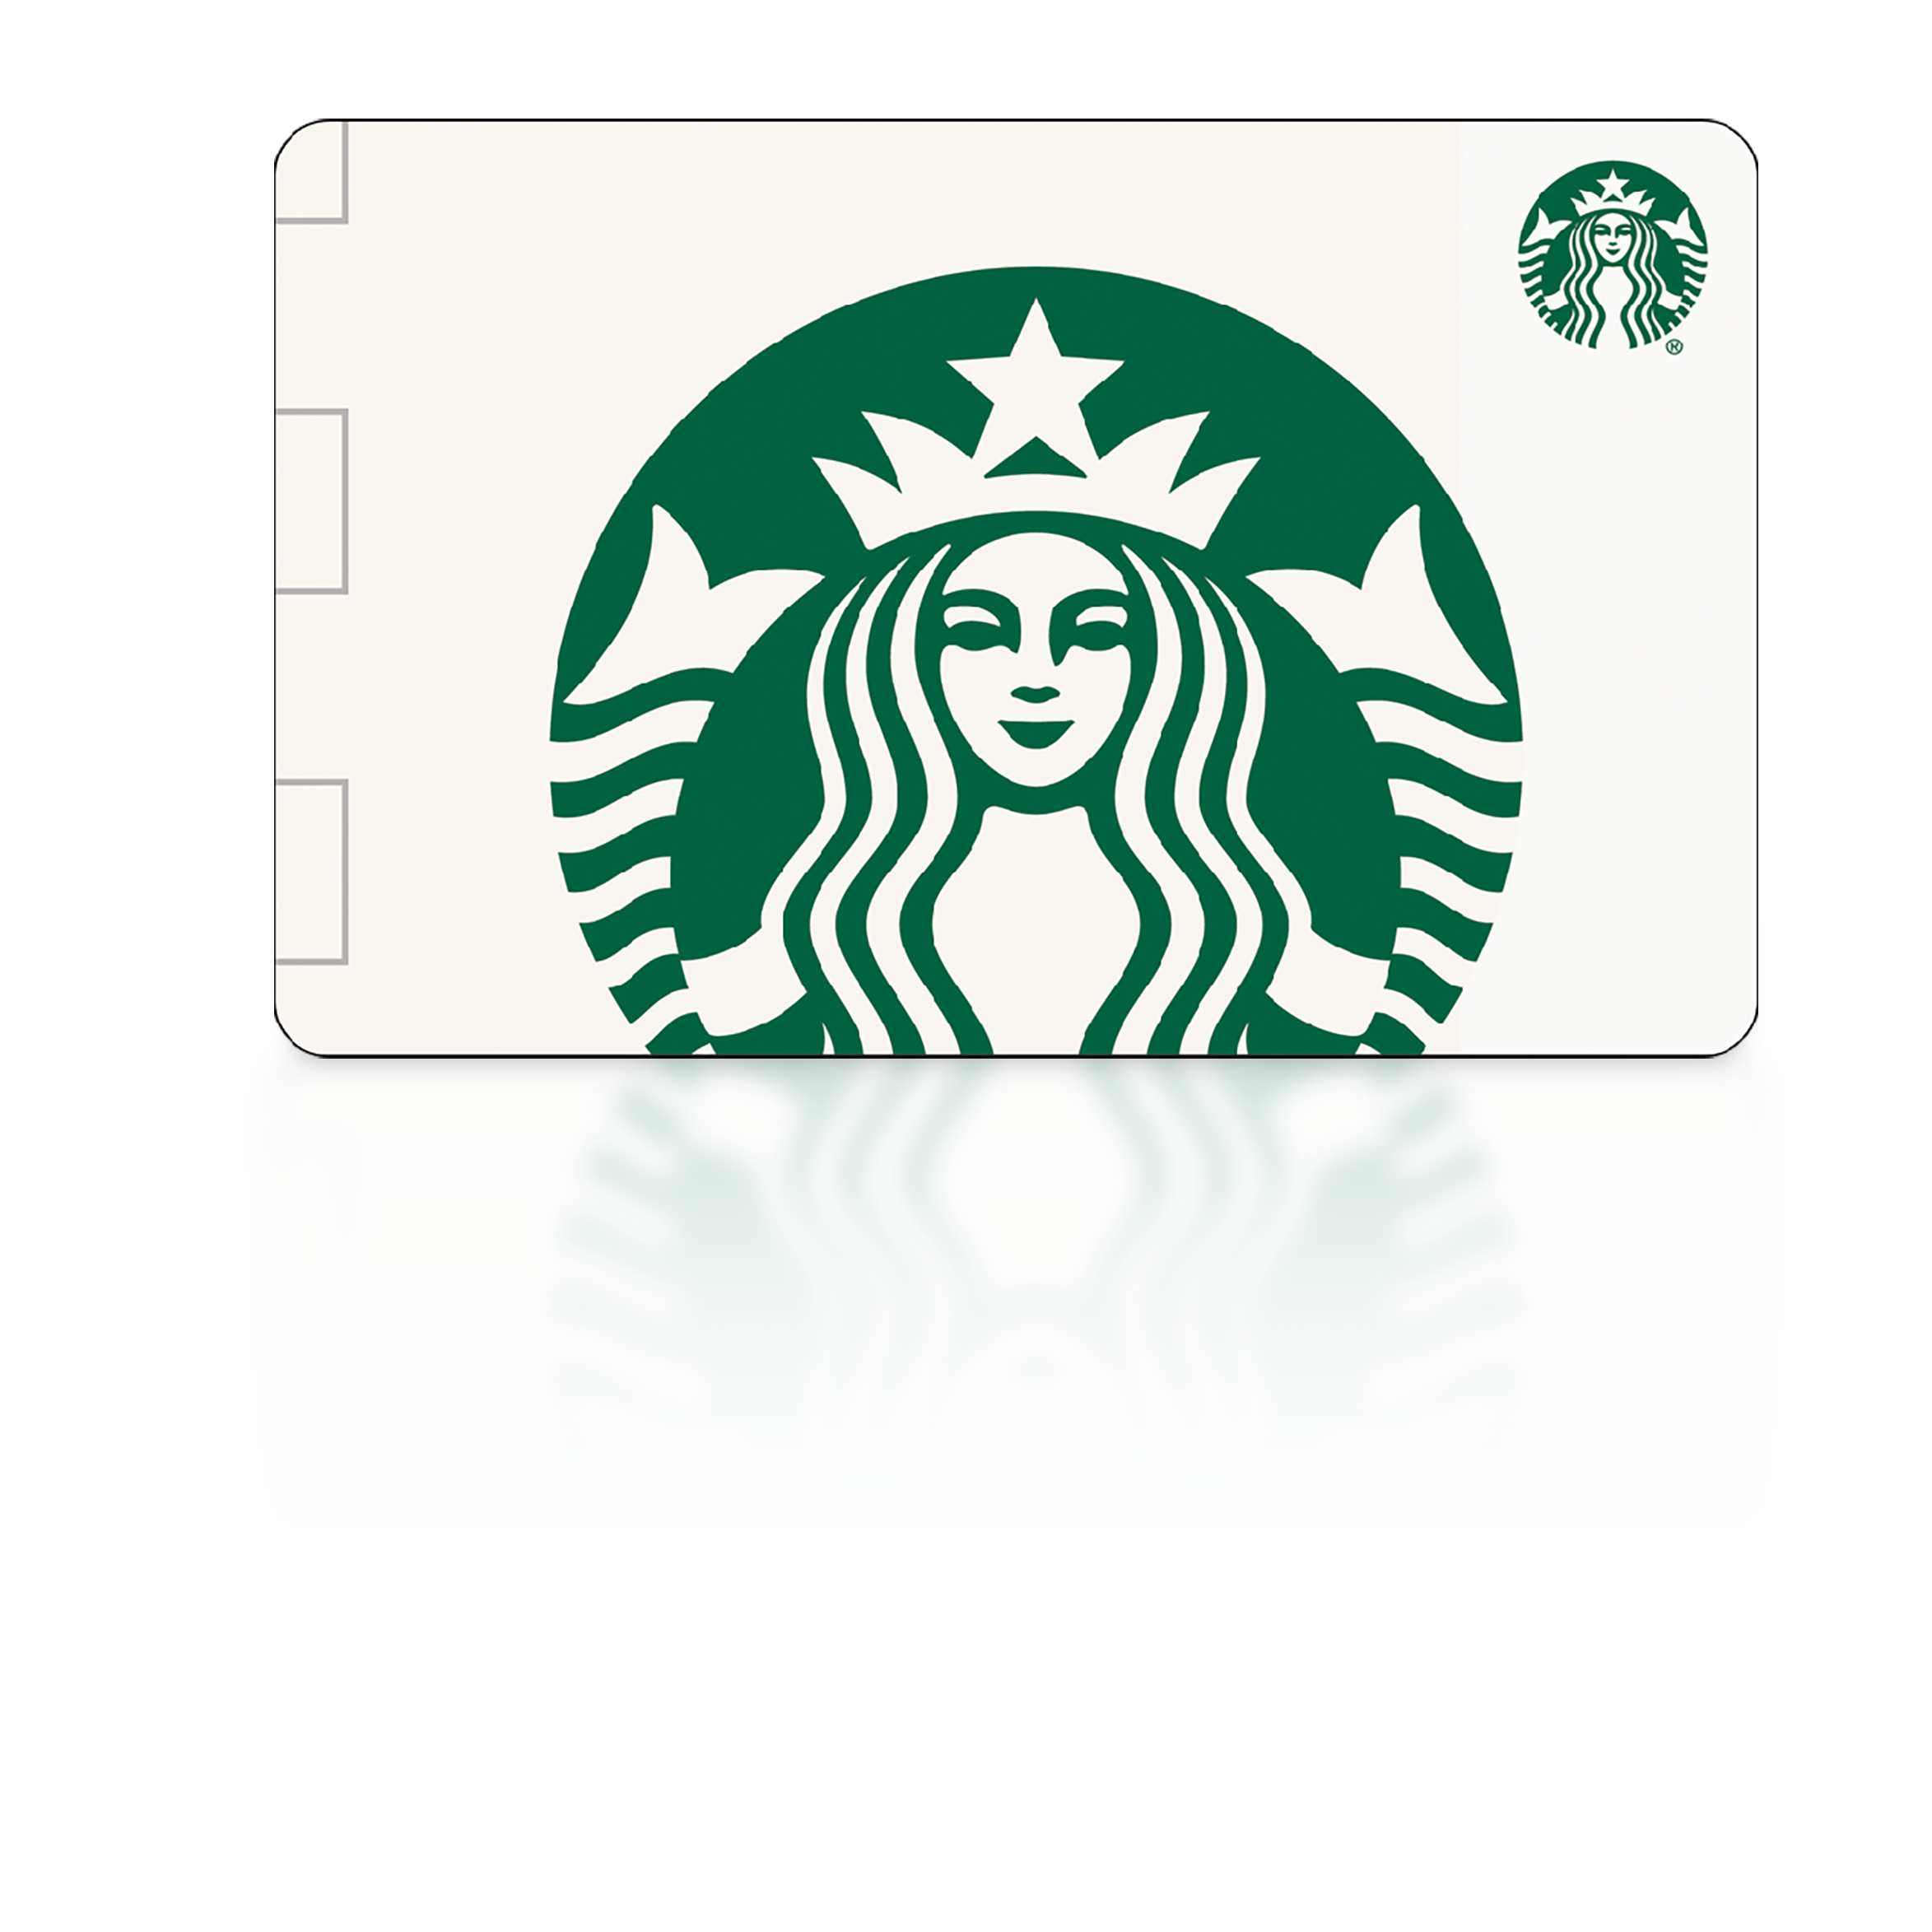 $5 Starbucks Gift Card